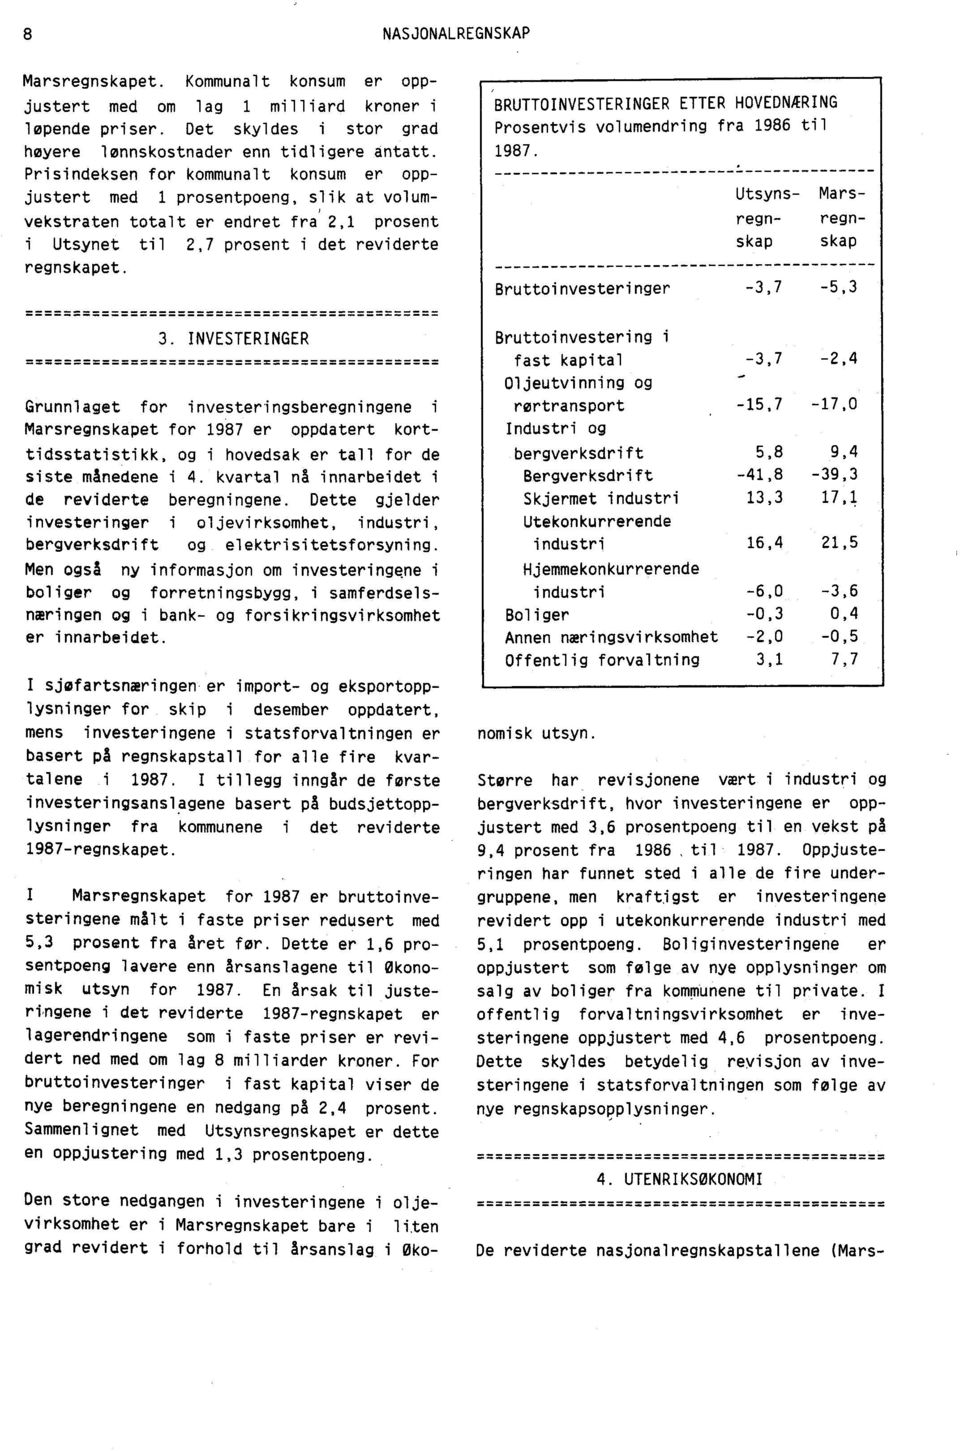 BRUTTOINVESTERINGER ETTER HOVEDNOING Prosentvis volumendring fra 1986 til 1987. Bruttoinvesteringer Utsyns- Marsregn- regnskap skap -3,7-5,3 3.